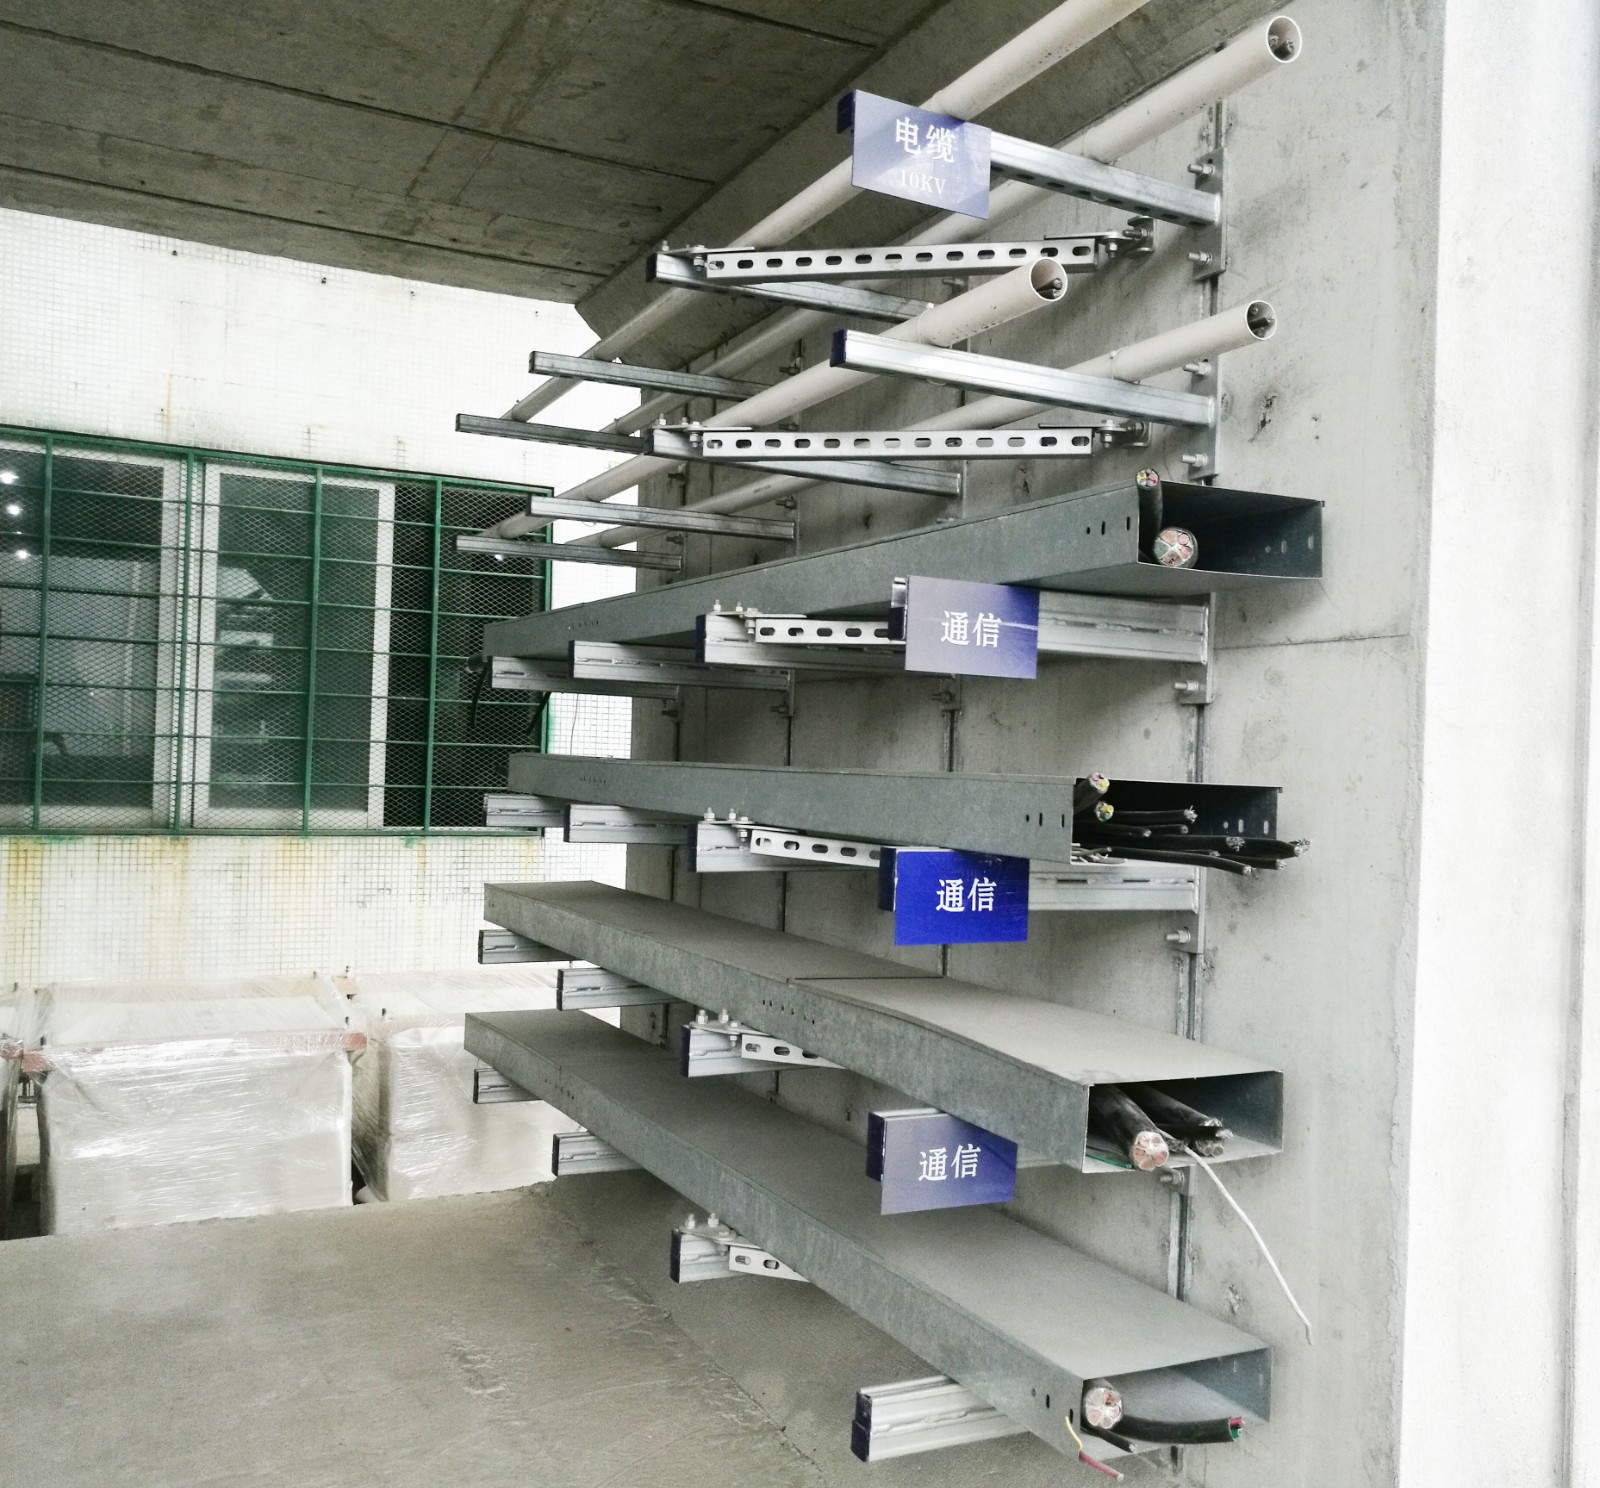 西藏管廊支架 阿利达 提供管廊支架图集 设计 深化 安装服务 抗震支架 支撑系统